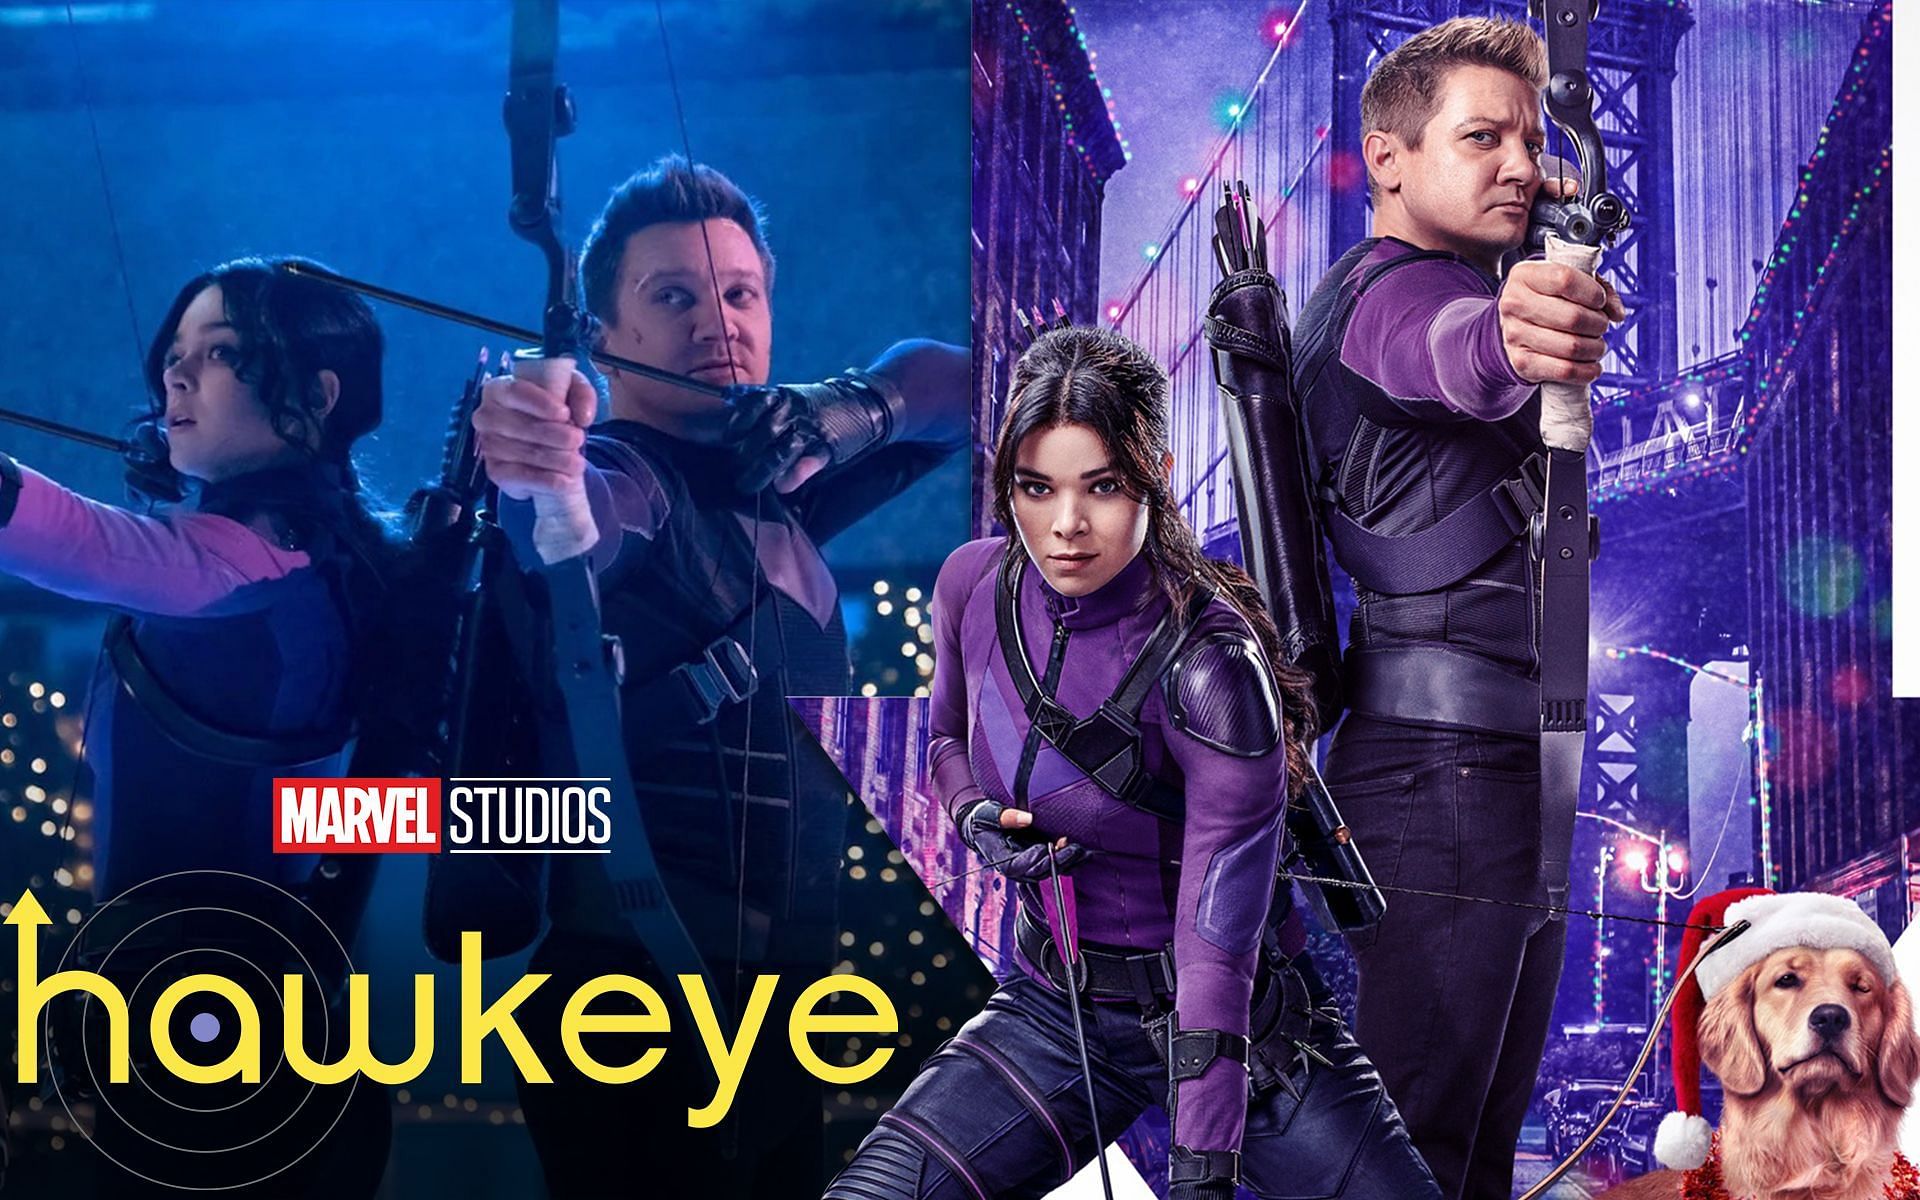 Hawkeye Season 1 Episode 4 Release Date, Cast, Plot, and Watch Online